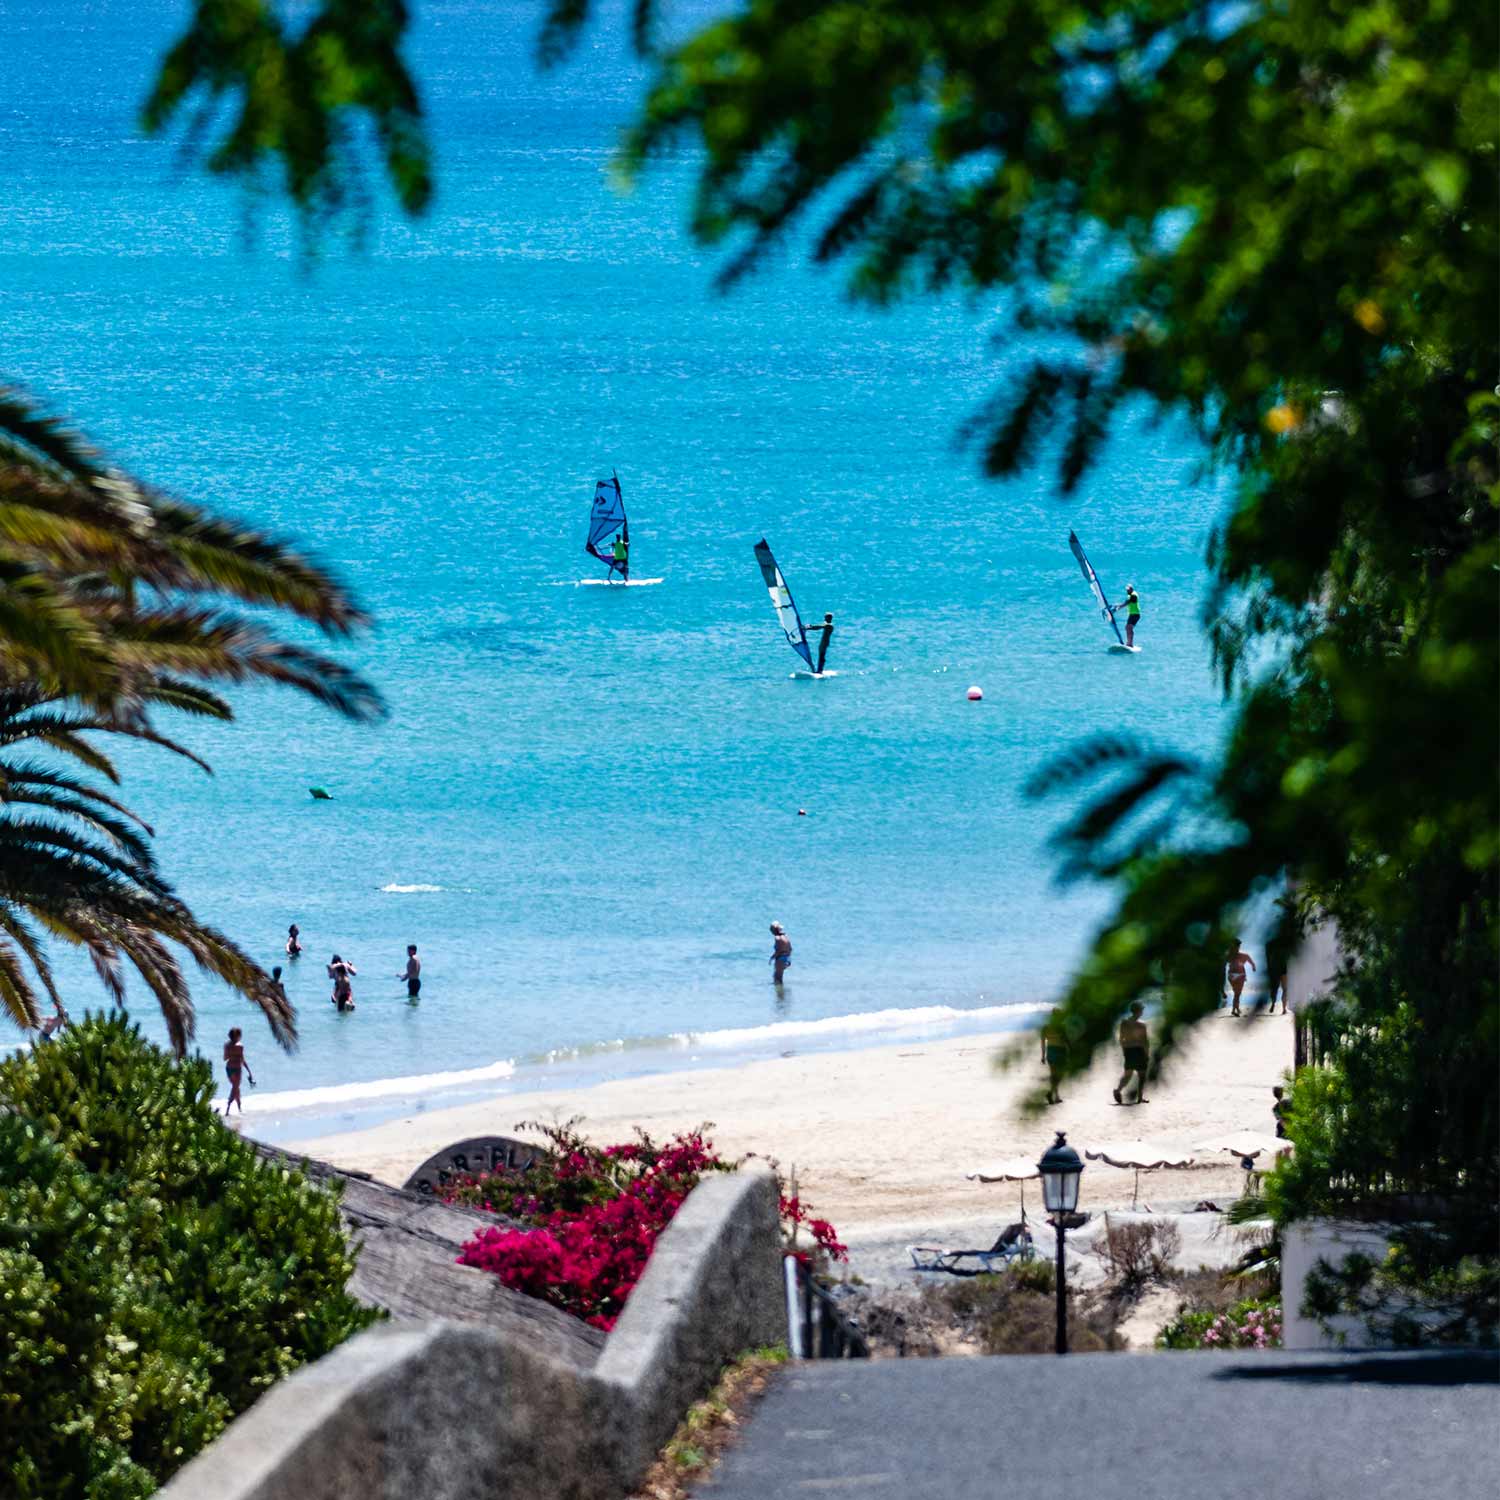 Uitzicht op het centrum en het windsurfstrand van Ion Club Costa Calma, Fuerteventura, dat kan worden vergeleken met het uitzicht en de Hawaiiaanse sfeer van het eiland Maui.